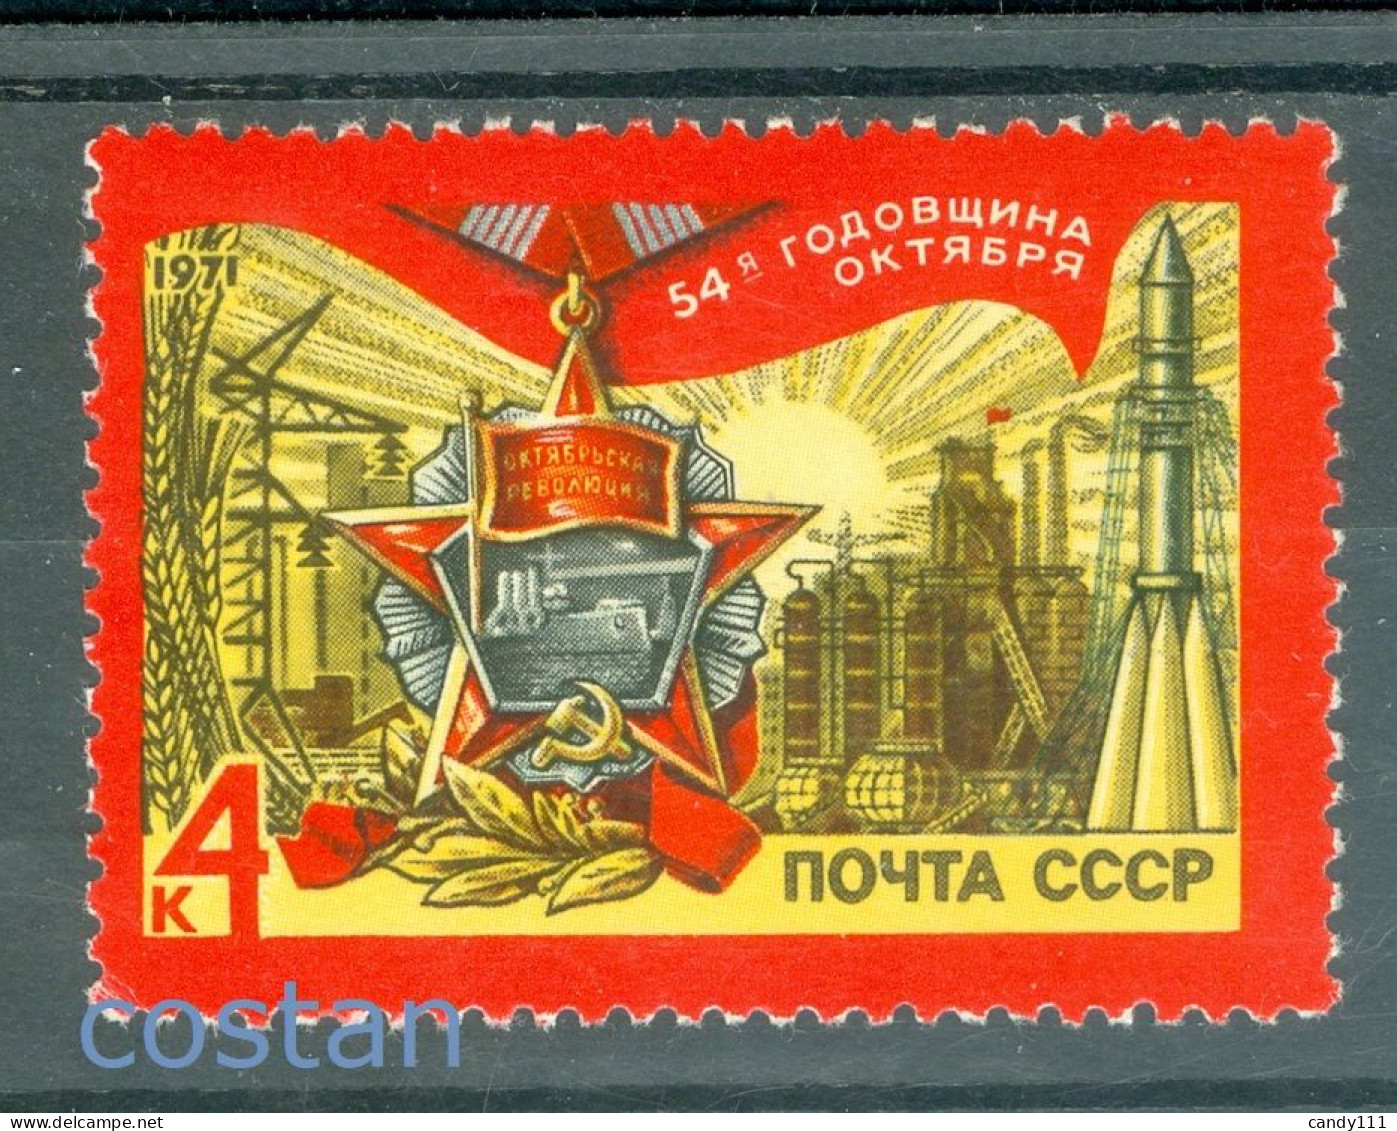 1971 October Revolution,Medal/Potemkin,Industry,Rocket,Power,Russia,3838,MNH - Ungebraucht